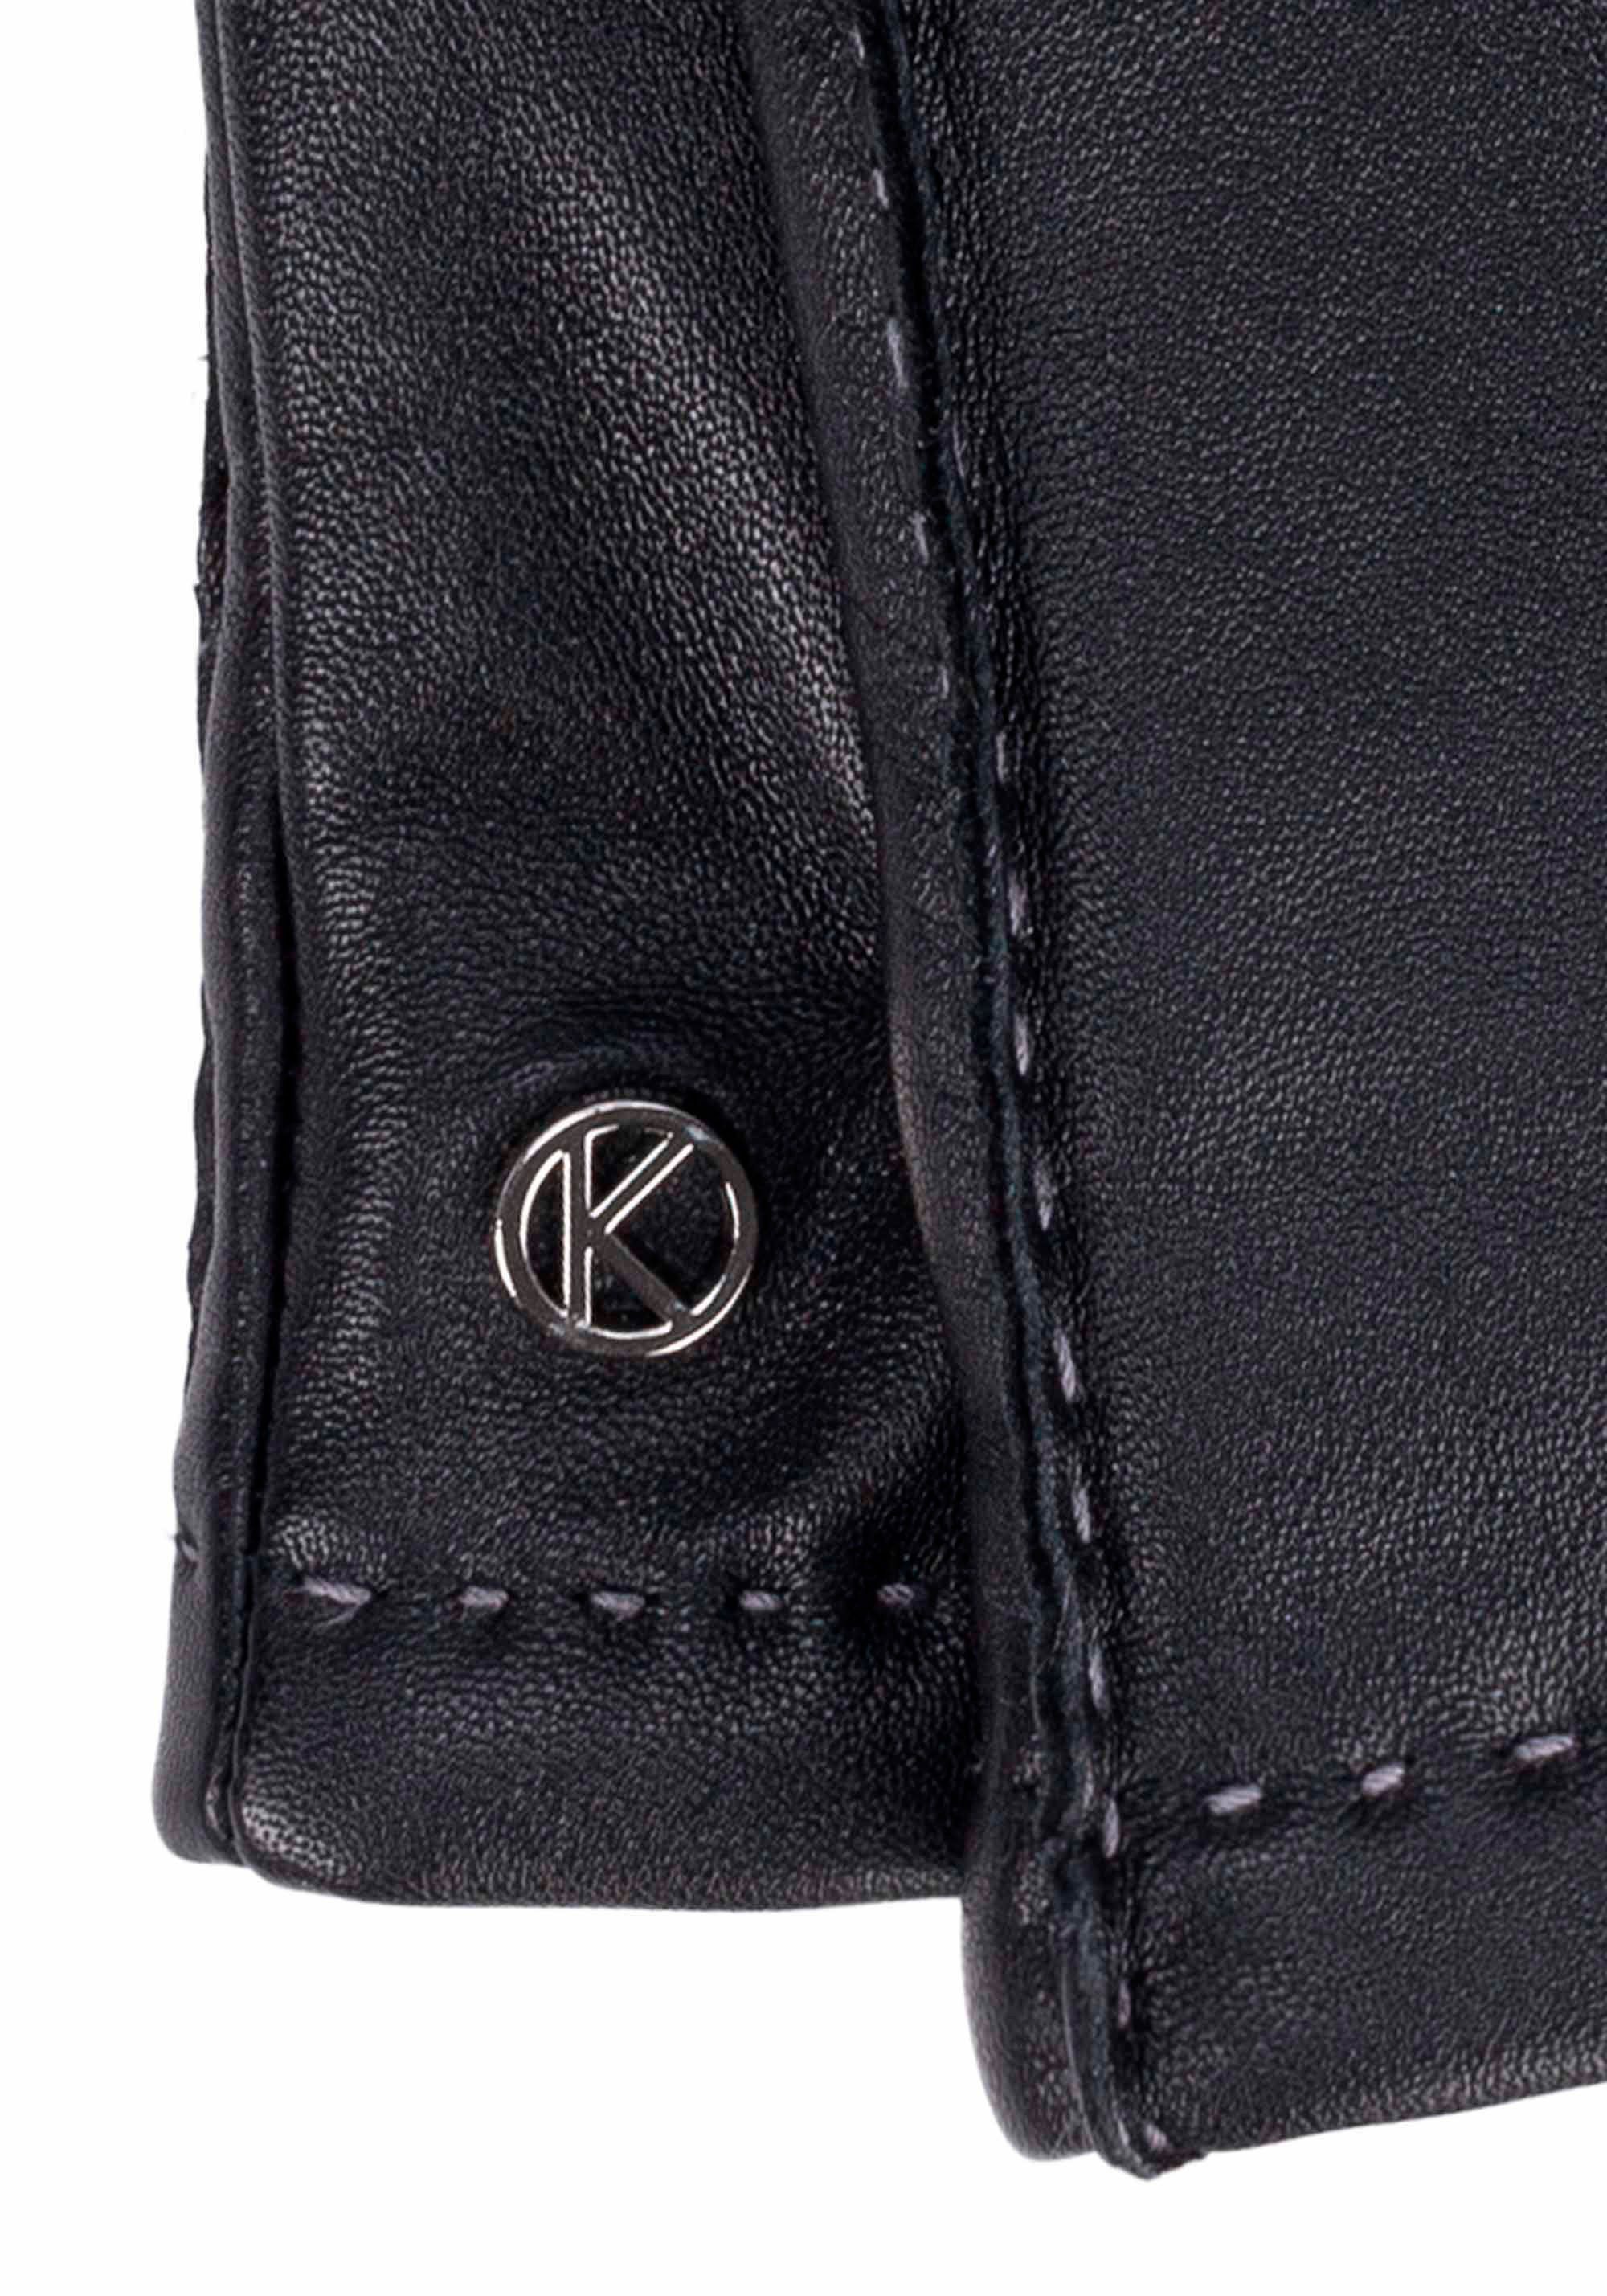 KESSLER Lederhandschuhe Smart- Oberflächen Touchfunktion Millie für black